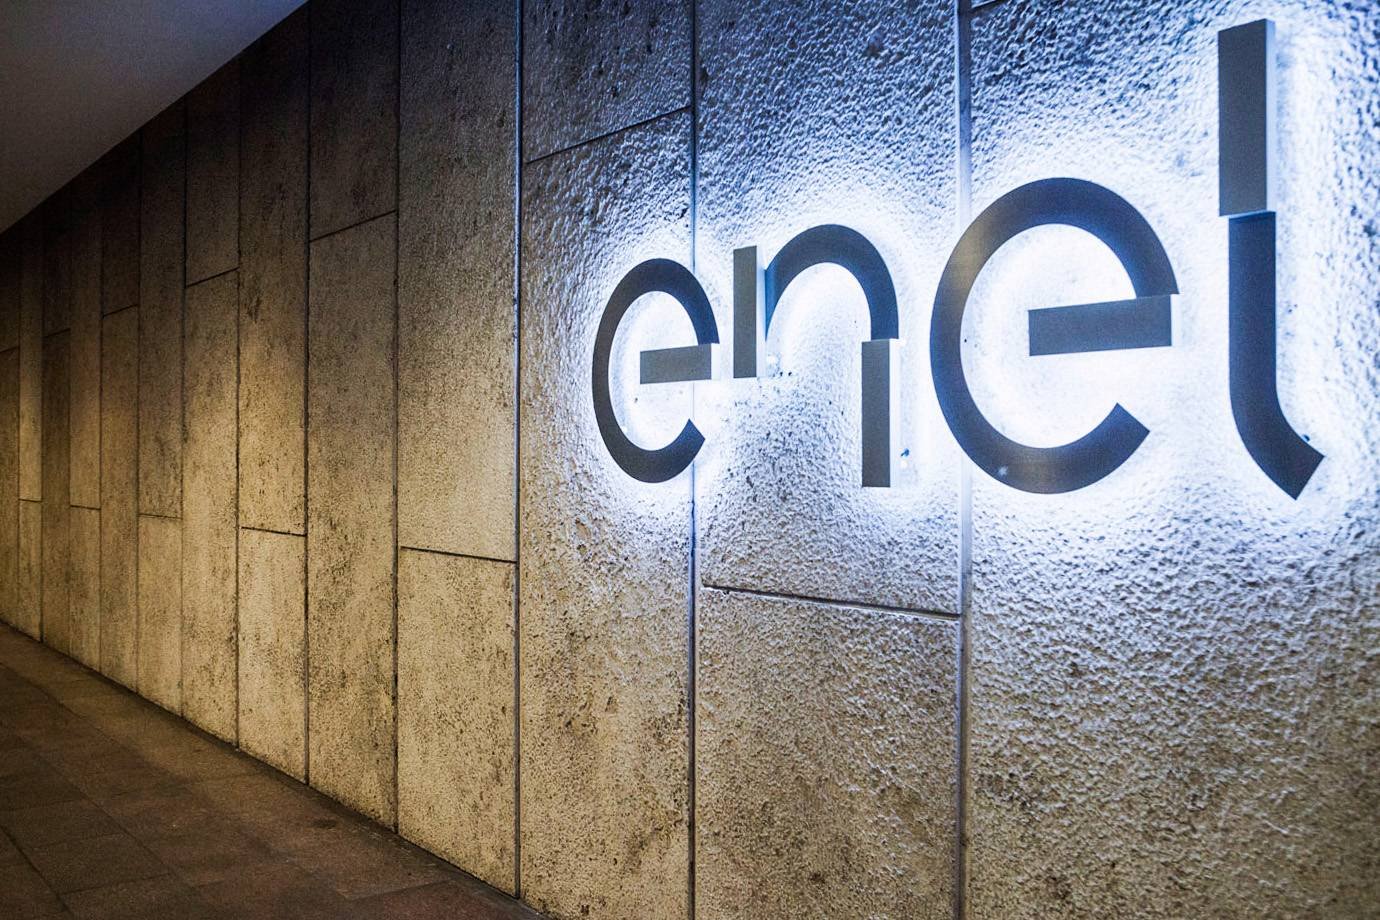 300 mil clientes da região de Osasco foram afetados por vazamento de dados pessoais, declara a Enel-SP.